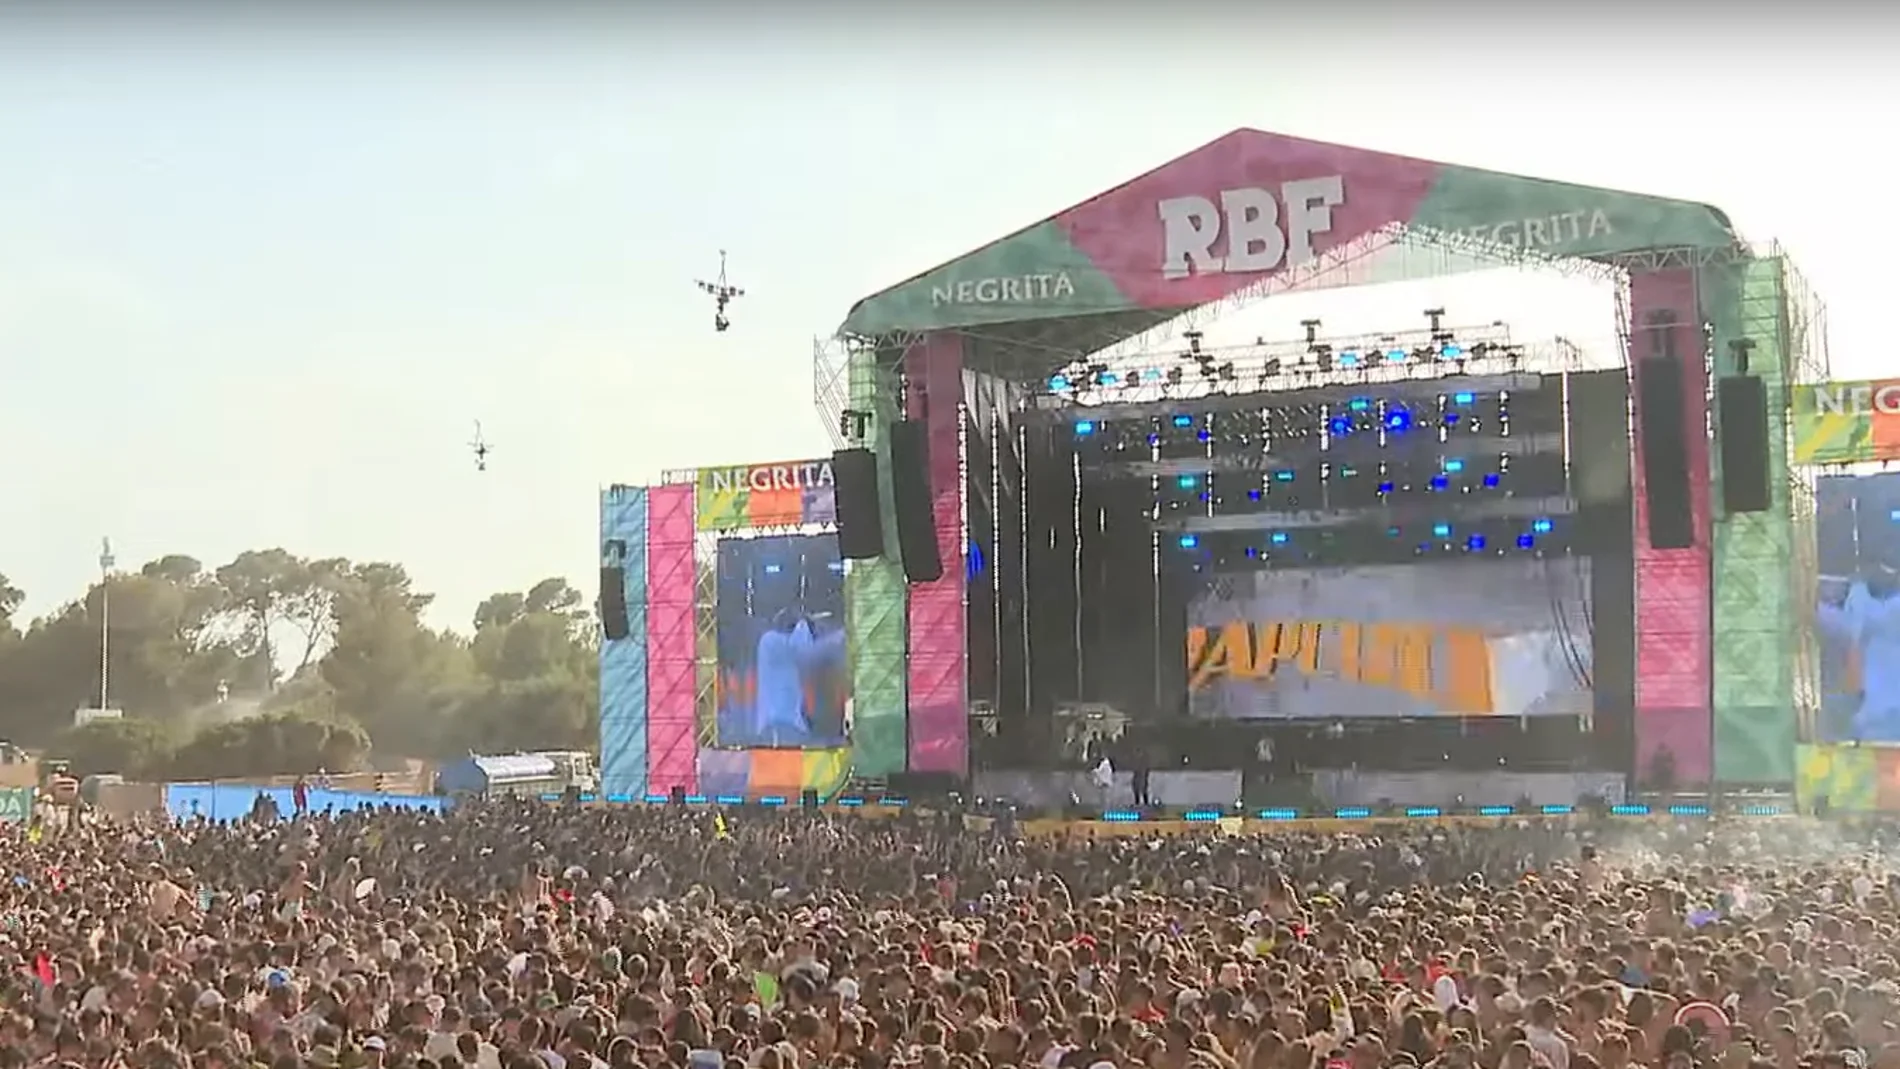 El Reggaeton Beach Festival de Madrid, cancelado definitivamente un día antes de su inicio